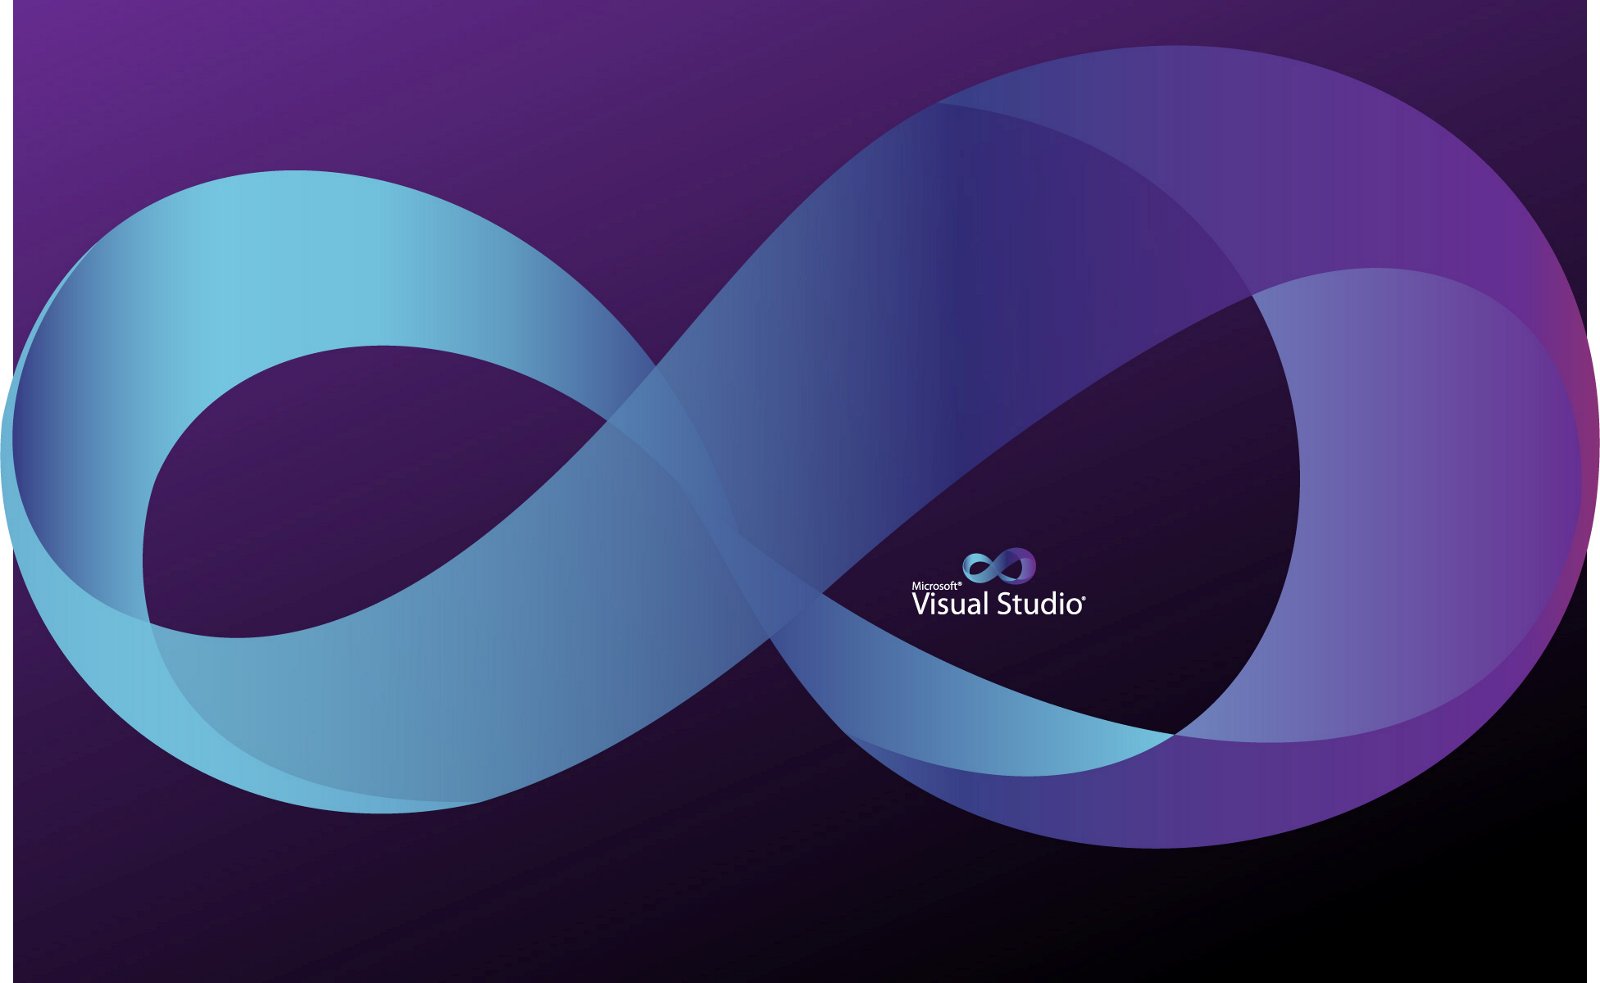 Microsoft presenta Visual Studio 2017 para facilitar el trabajo de los desarrolladores